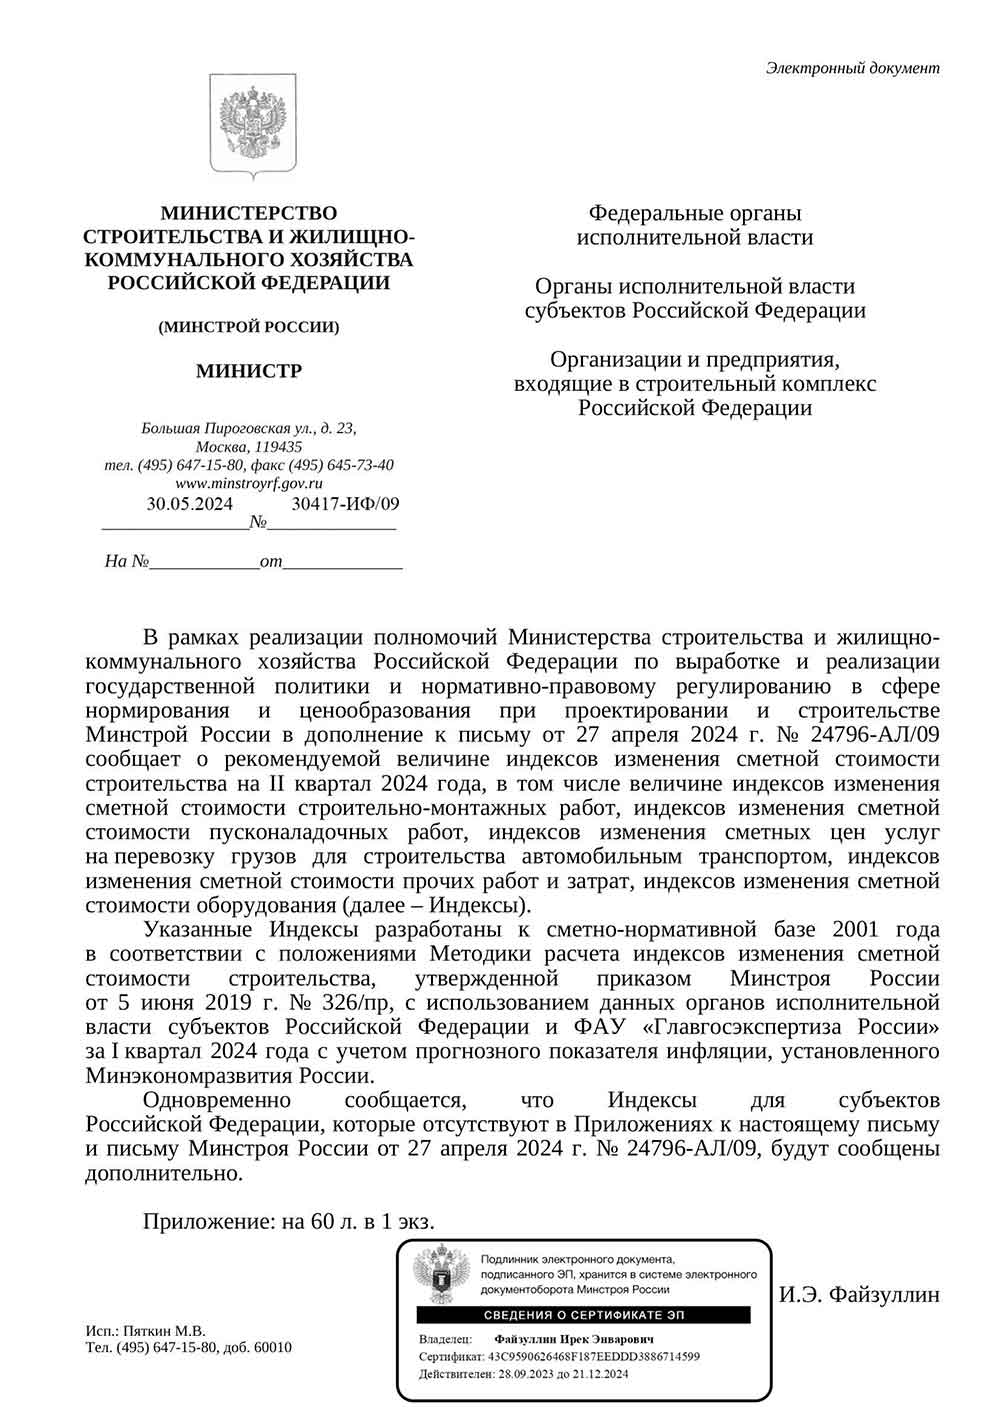 Письмо Минстроя РФ №30417-ИФ/09 от 30.05.2024 г. Скачать ПДФ